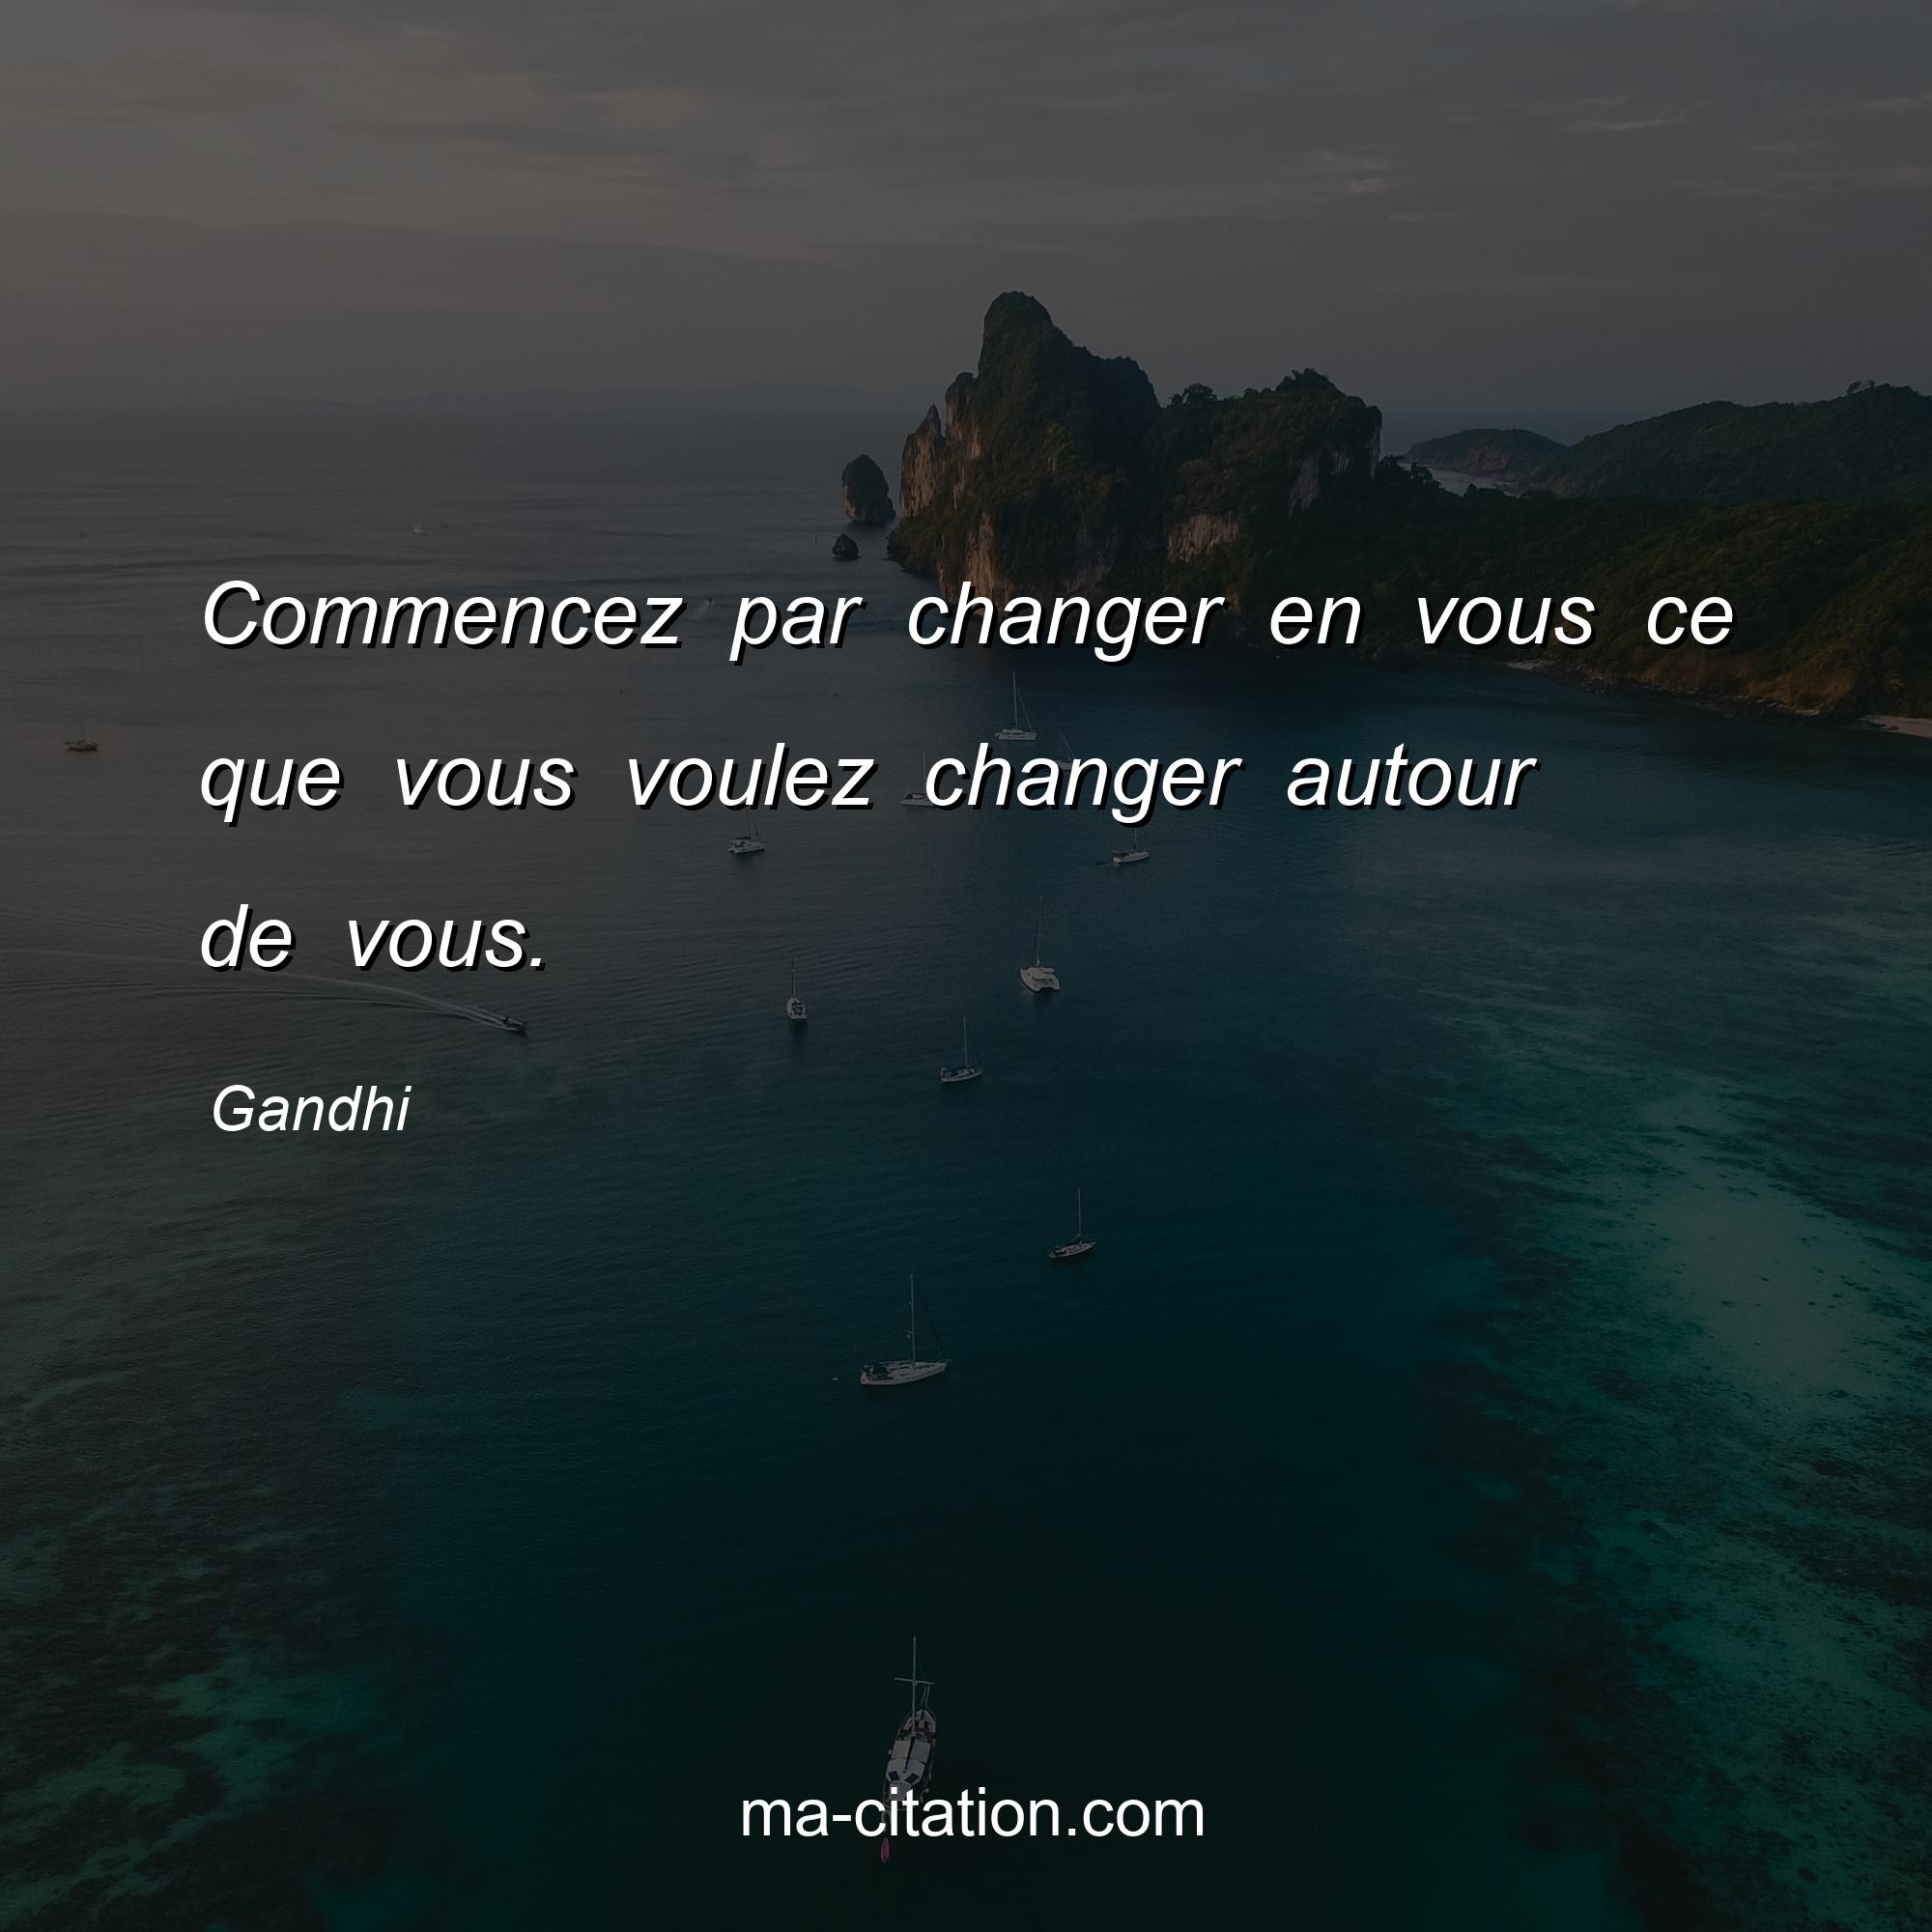 Gandhi : Commencez par changer en vous ce que vous voulez changer autour de vous.